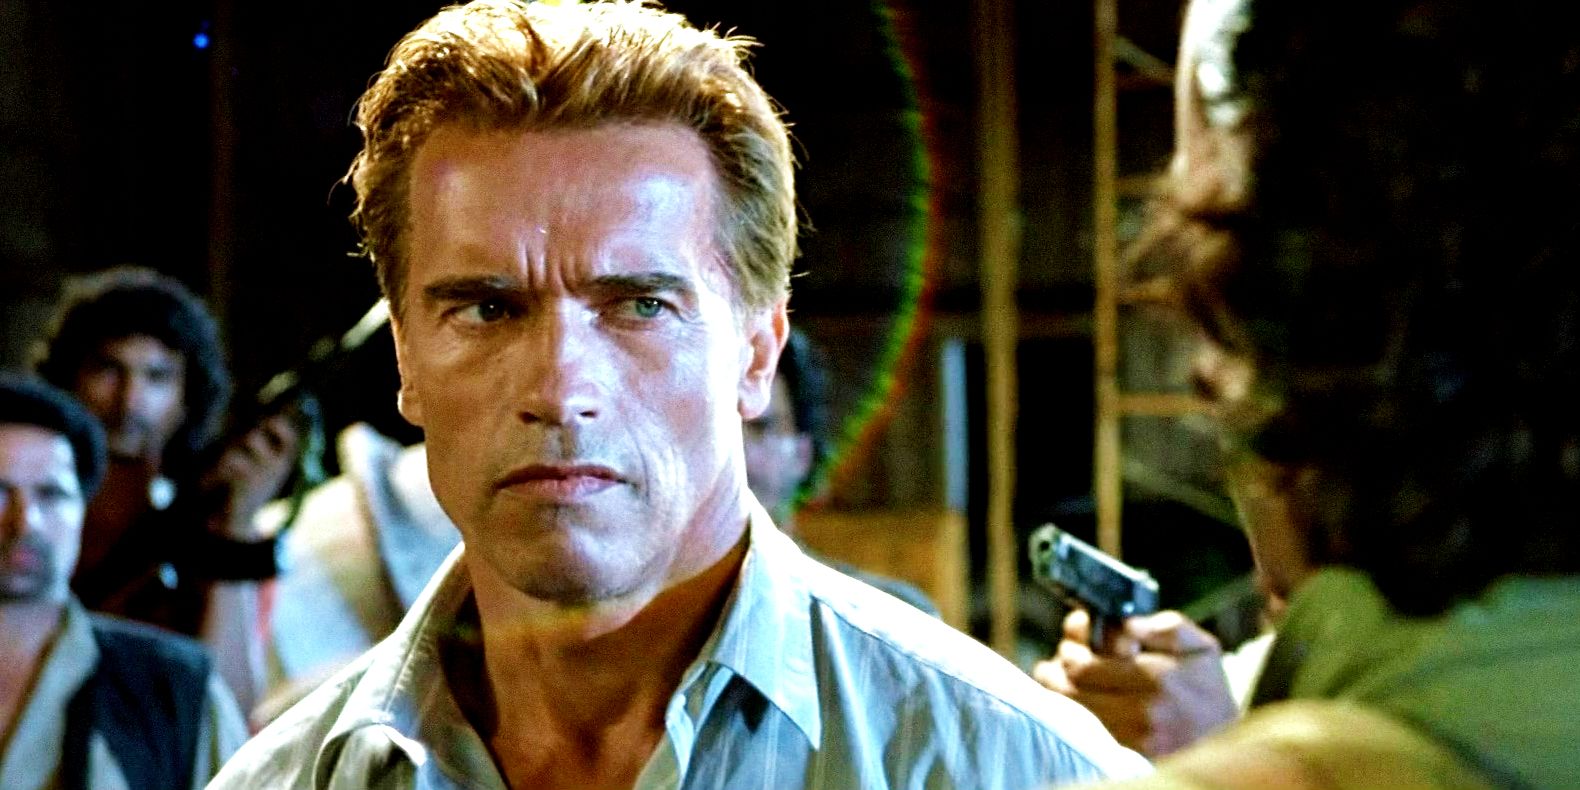 Arnold Schwarzenegger as Harry Tasker with gun pointed at him in True Lies movie